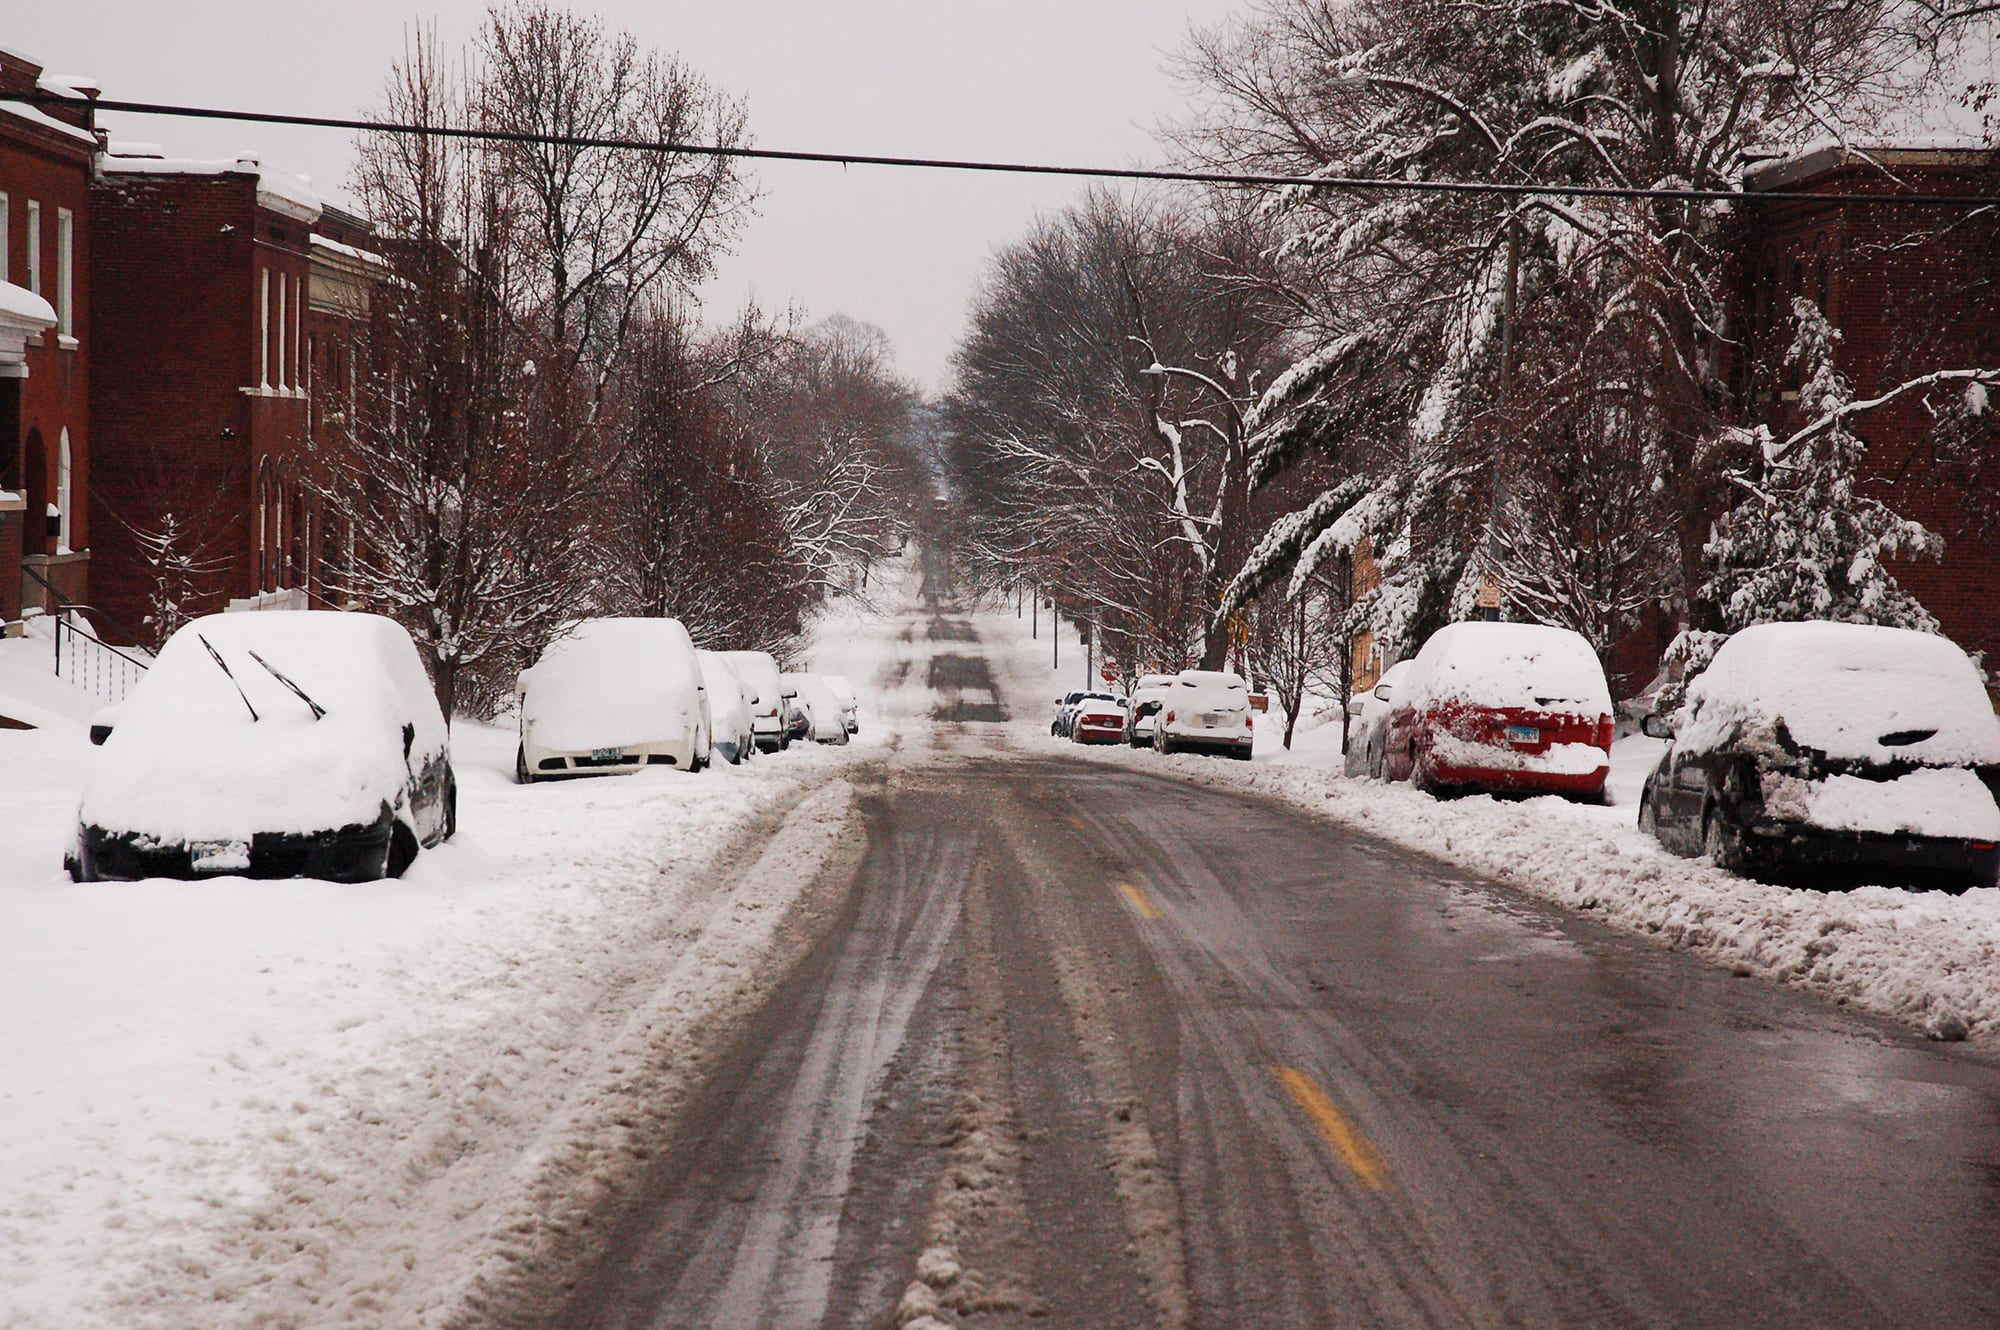 Compton Avenue in the snow.